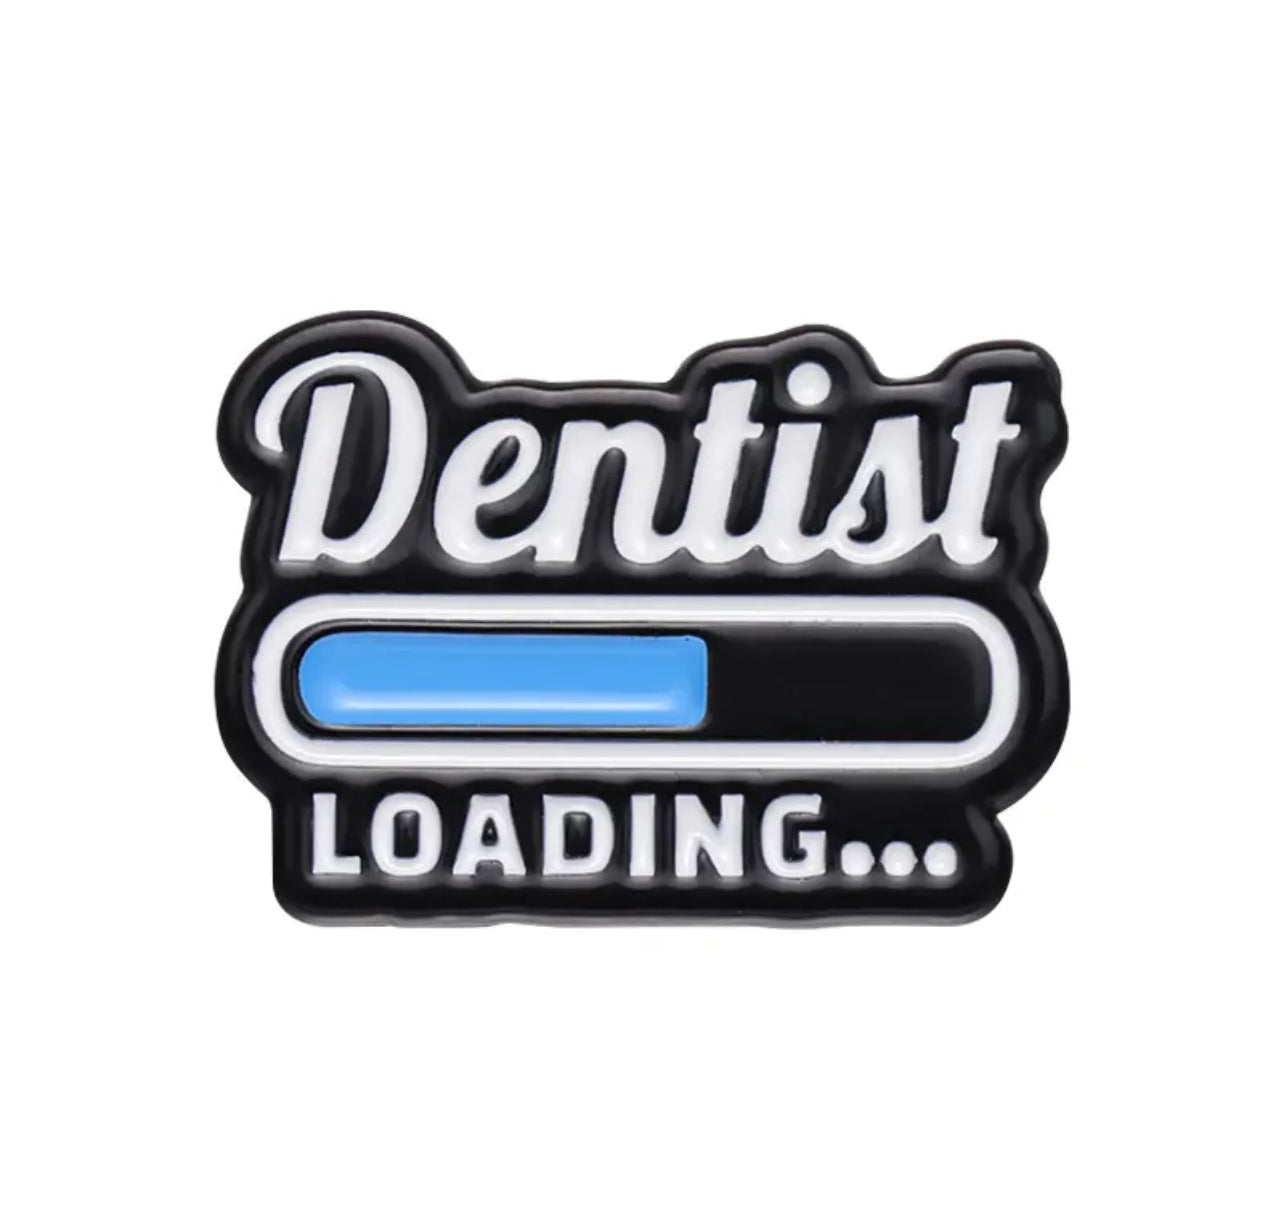 Dentist loading